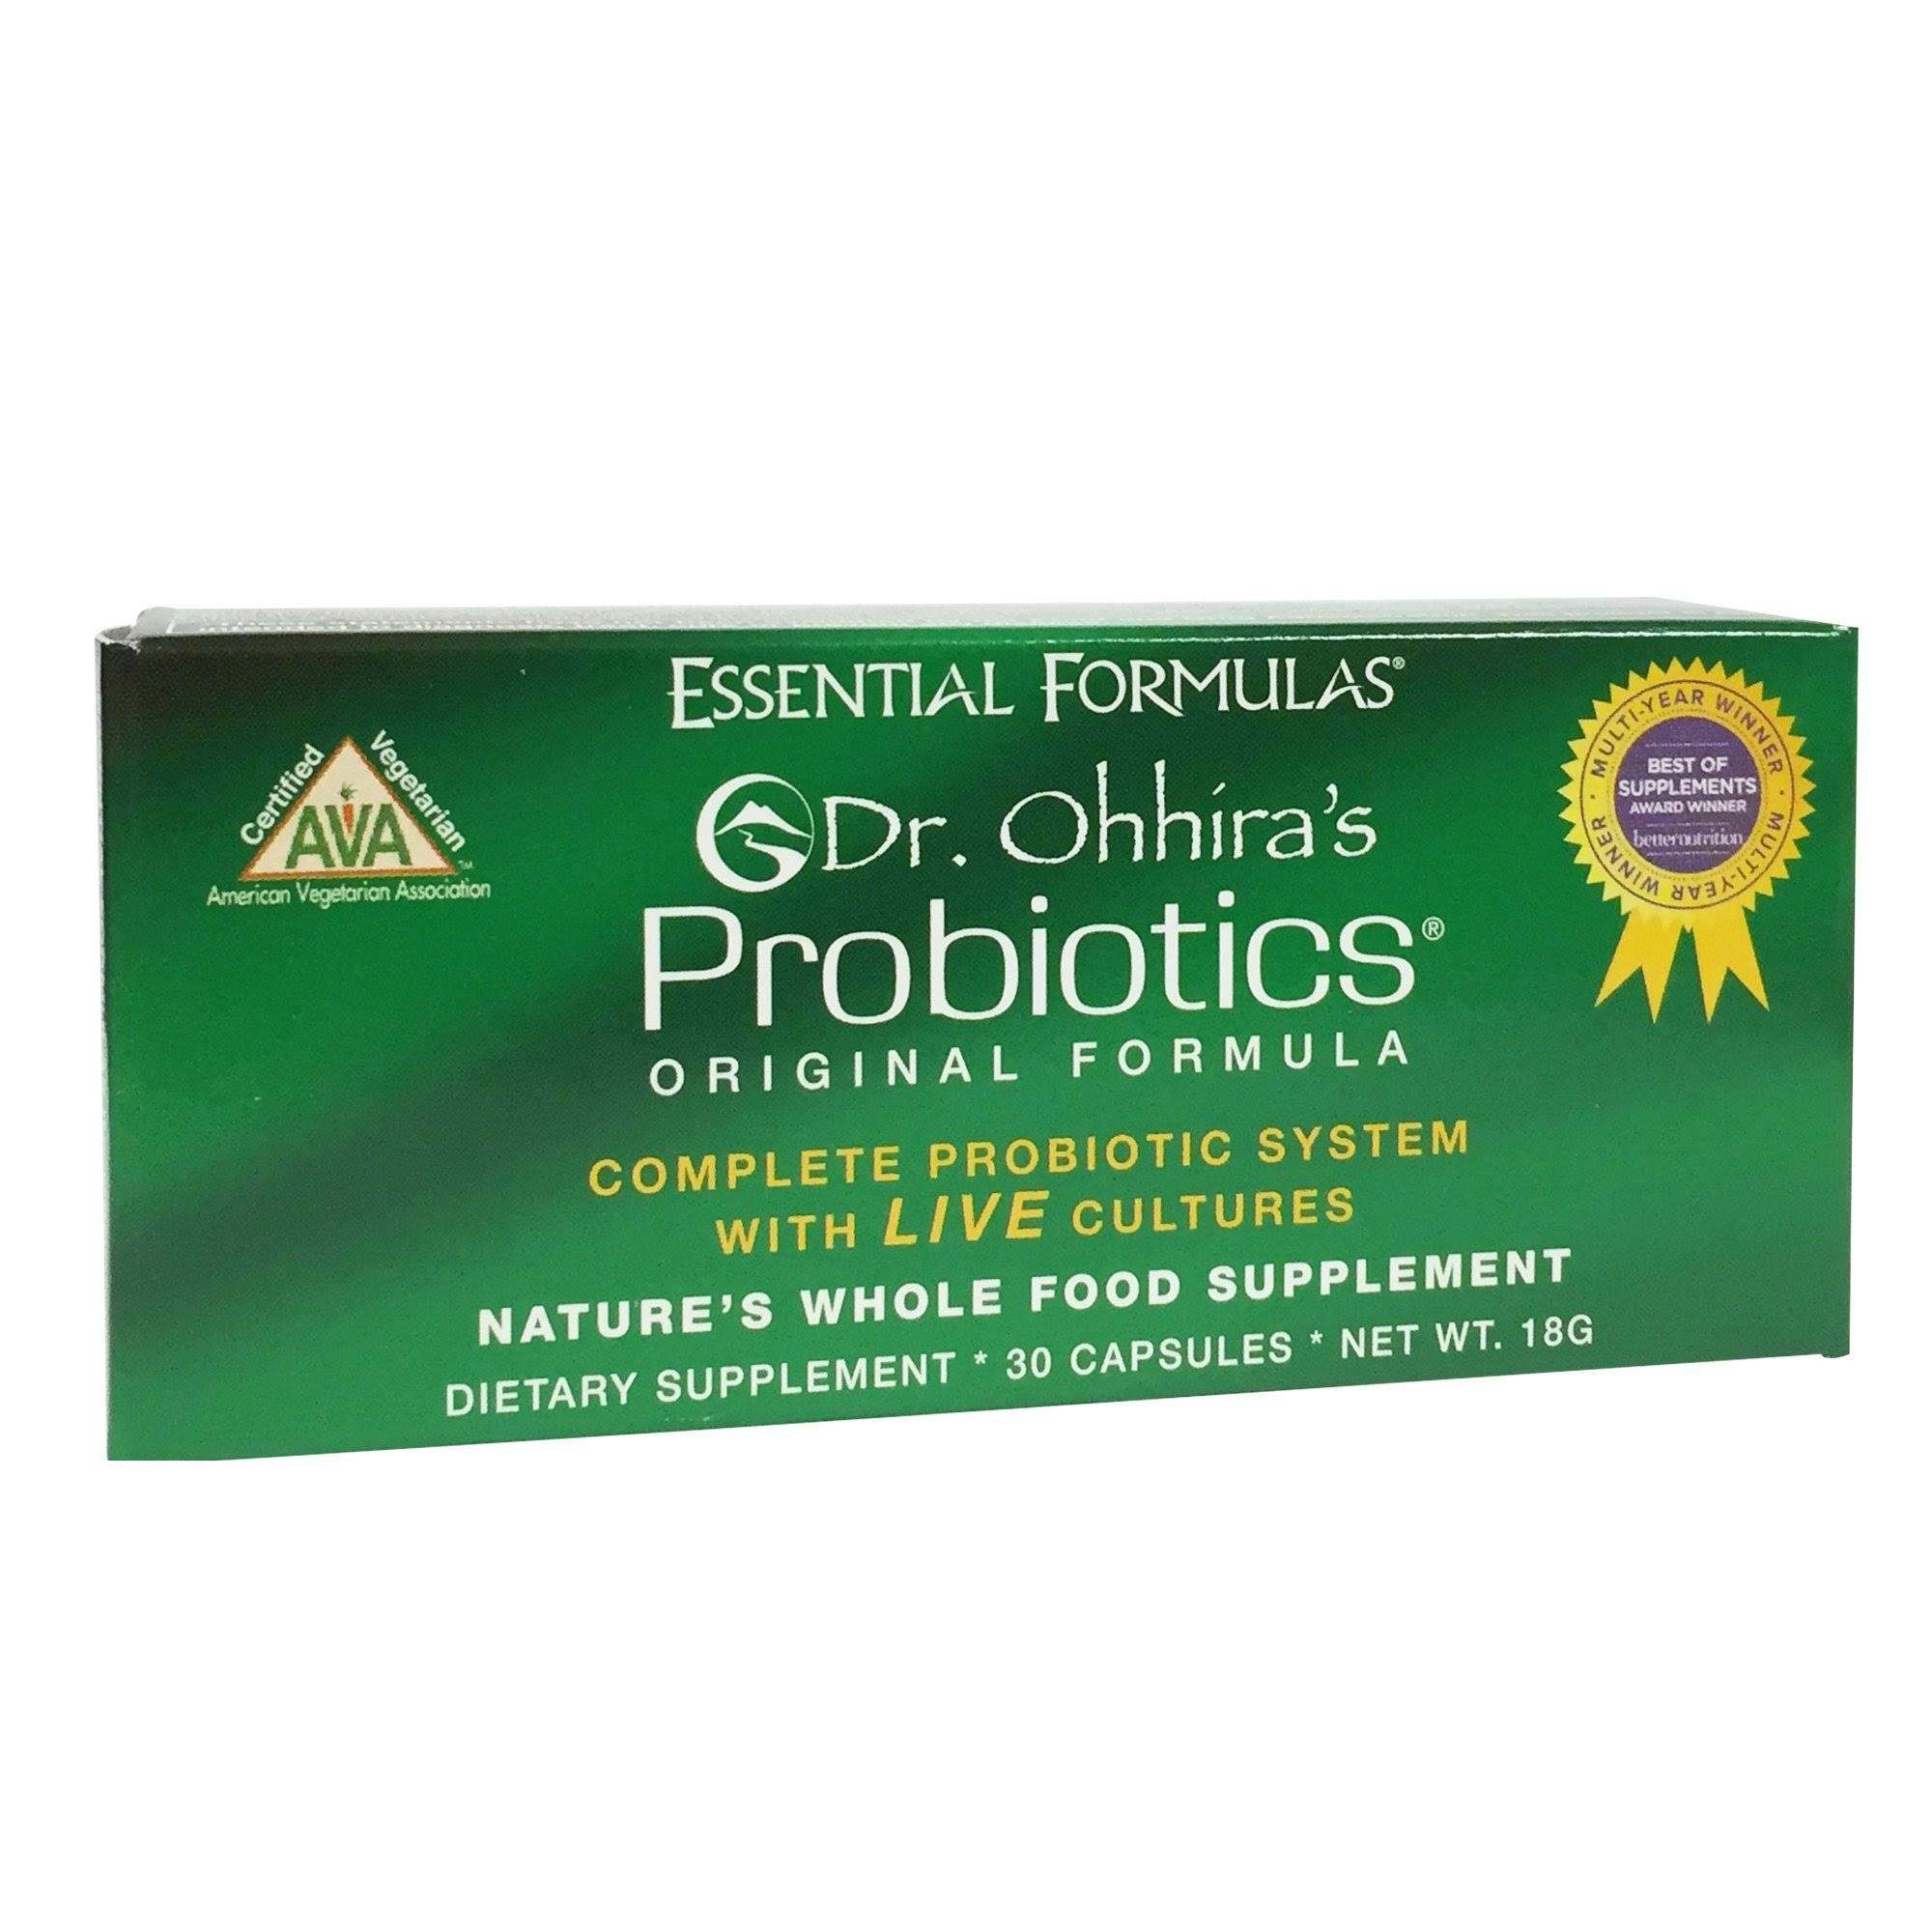 Dr. Ohhira's Probiotics Original Formula - 30 Capsules